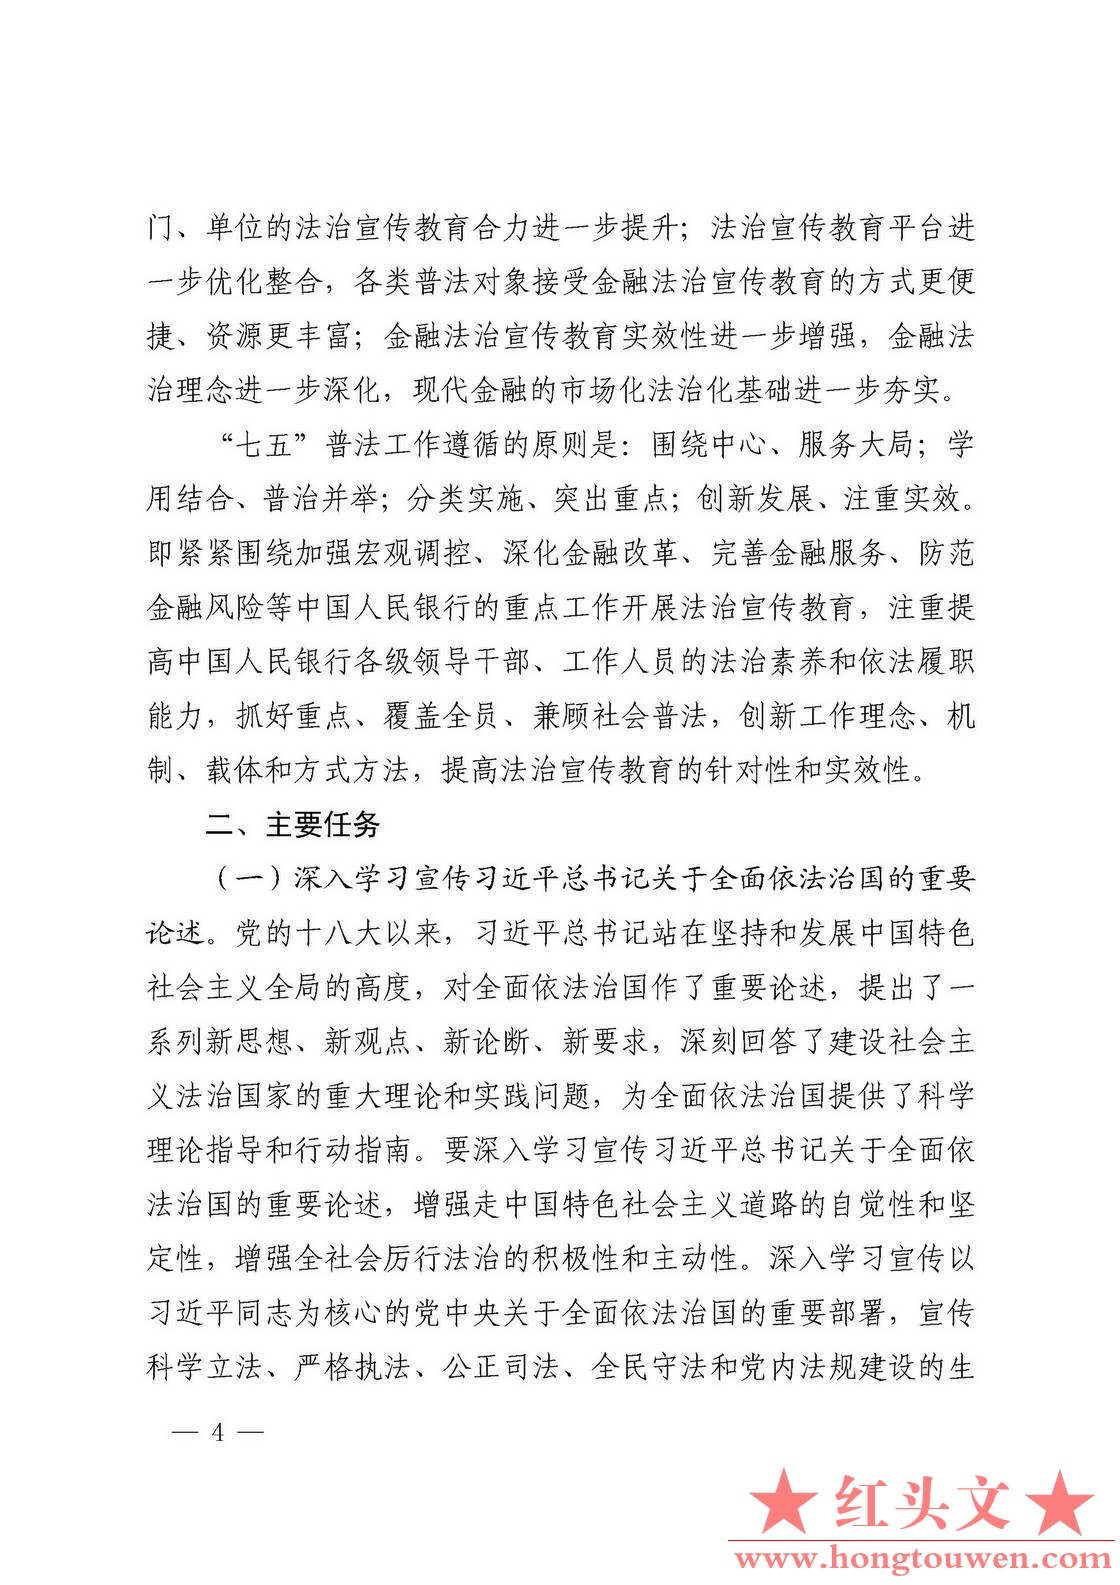 银发[2016]308号-中国人民银行关于印发《中国人民银行法制宣传教育第七个五年规划》的.jpg